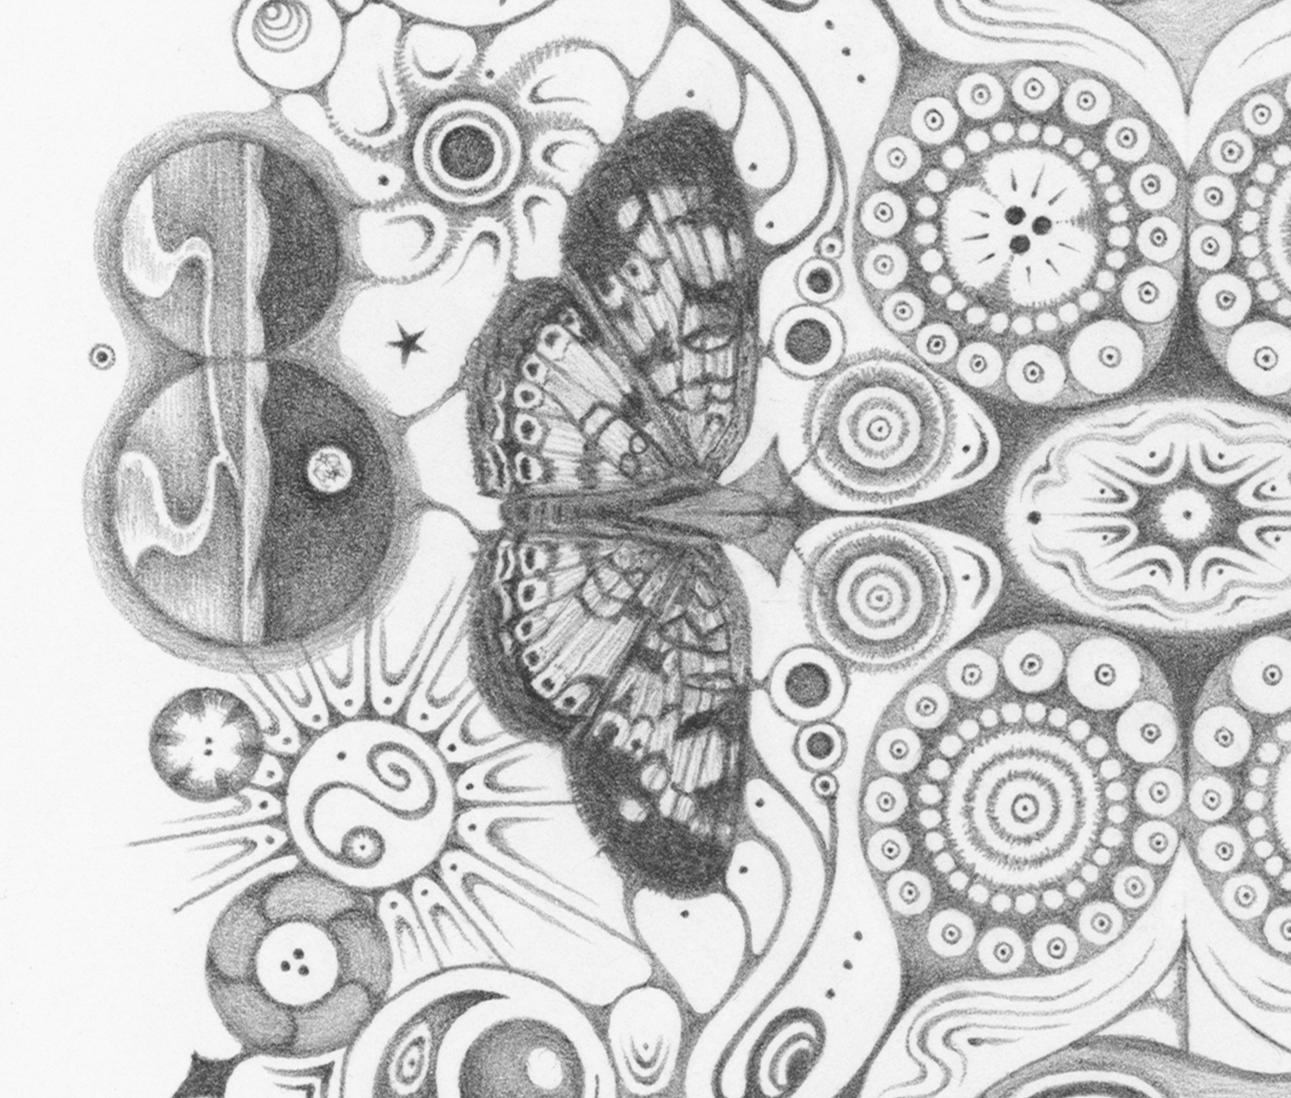 Ein sorgfältig gestaltetes Schmetterlingspaar auf beiden Seiten der Mitte ist das herausragende Merkmal dieses Mandalas. In vielen Kulturen wird der Schmetterling mit Leben und Verwandlung assoziiert und ist ein weit verbreitetes Symbol für Wachstum